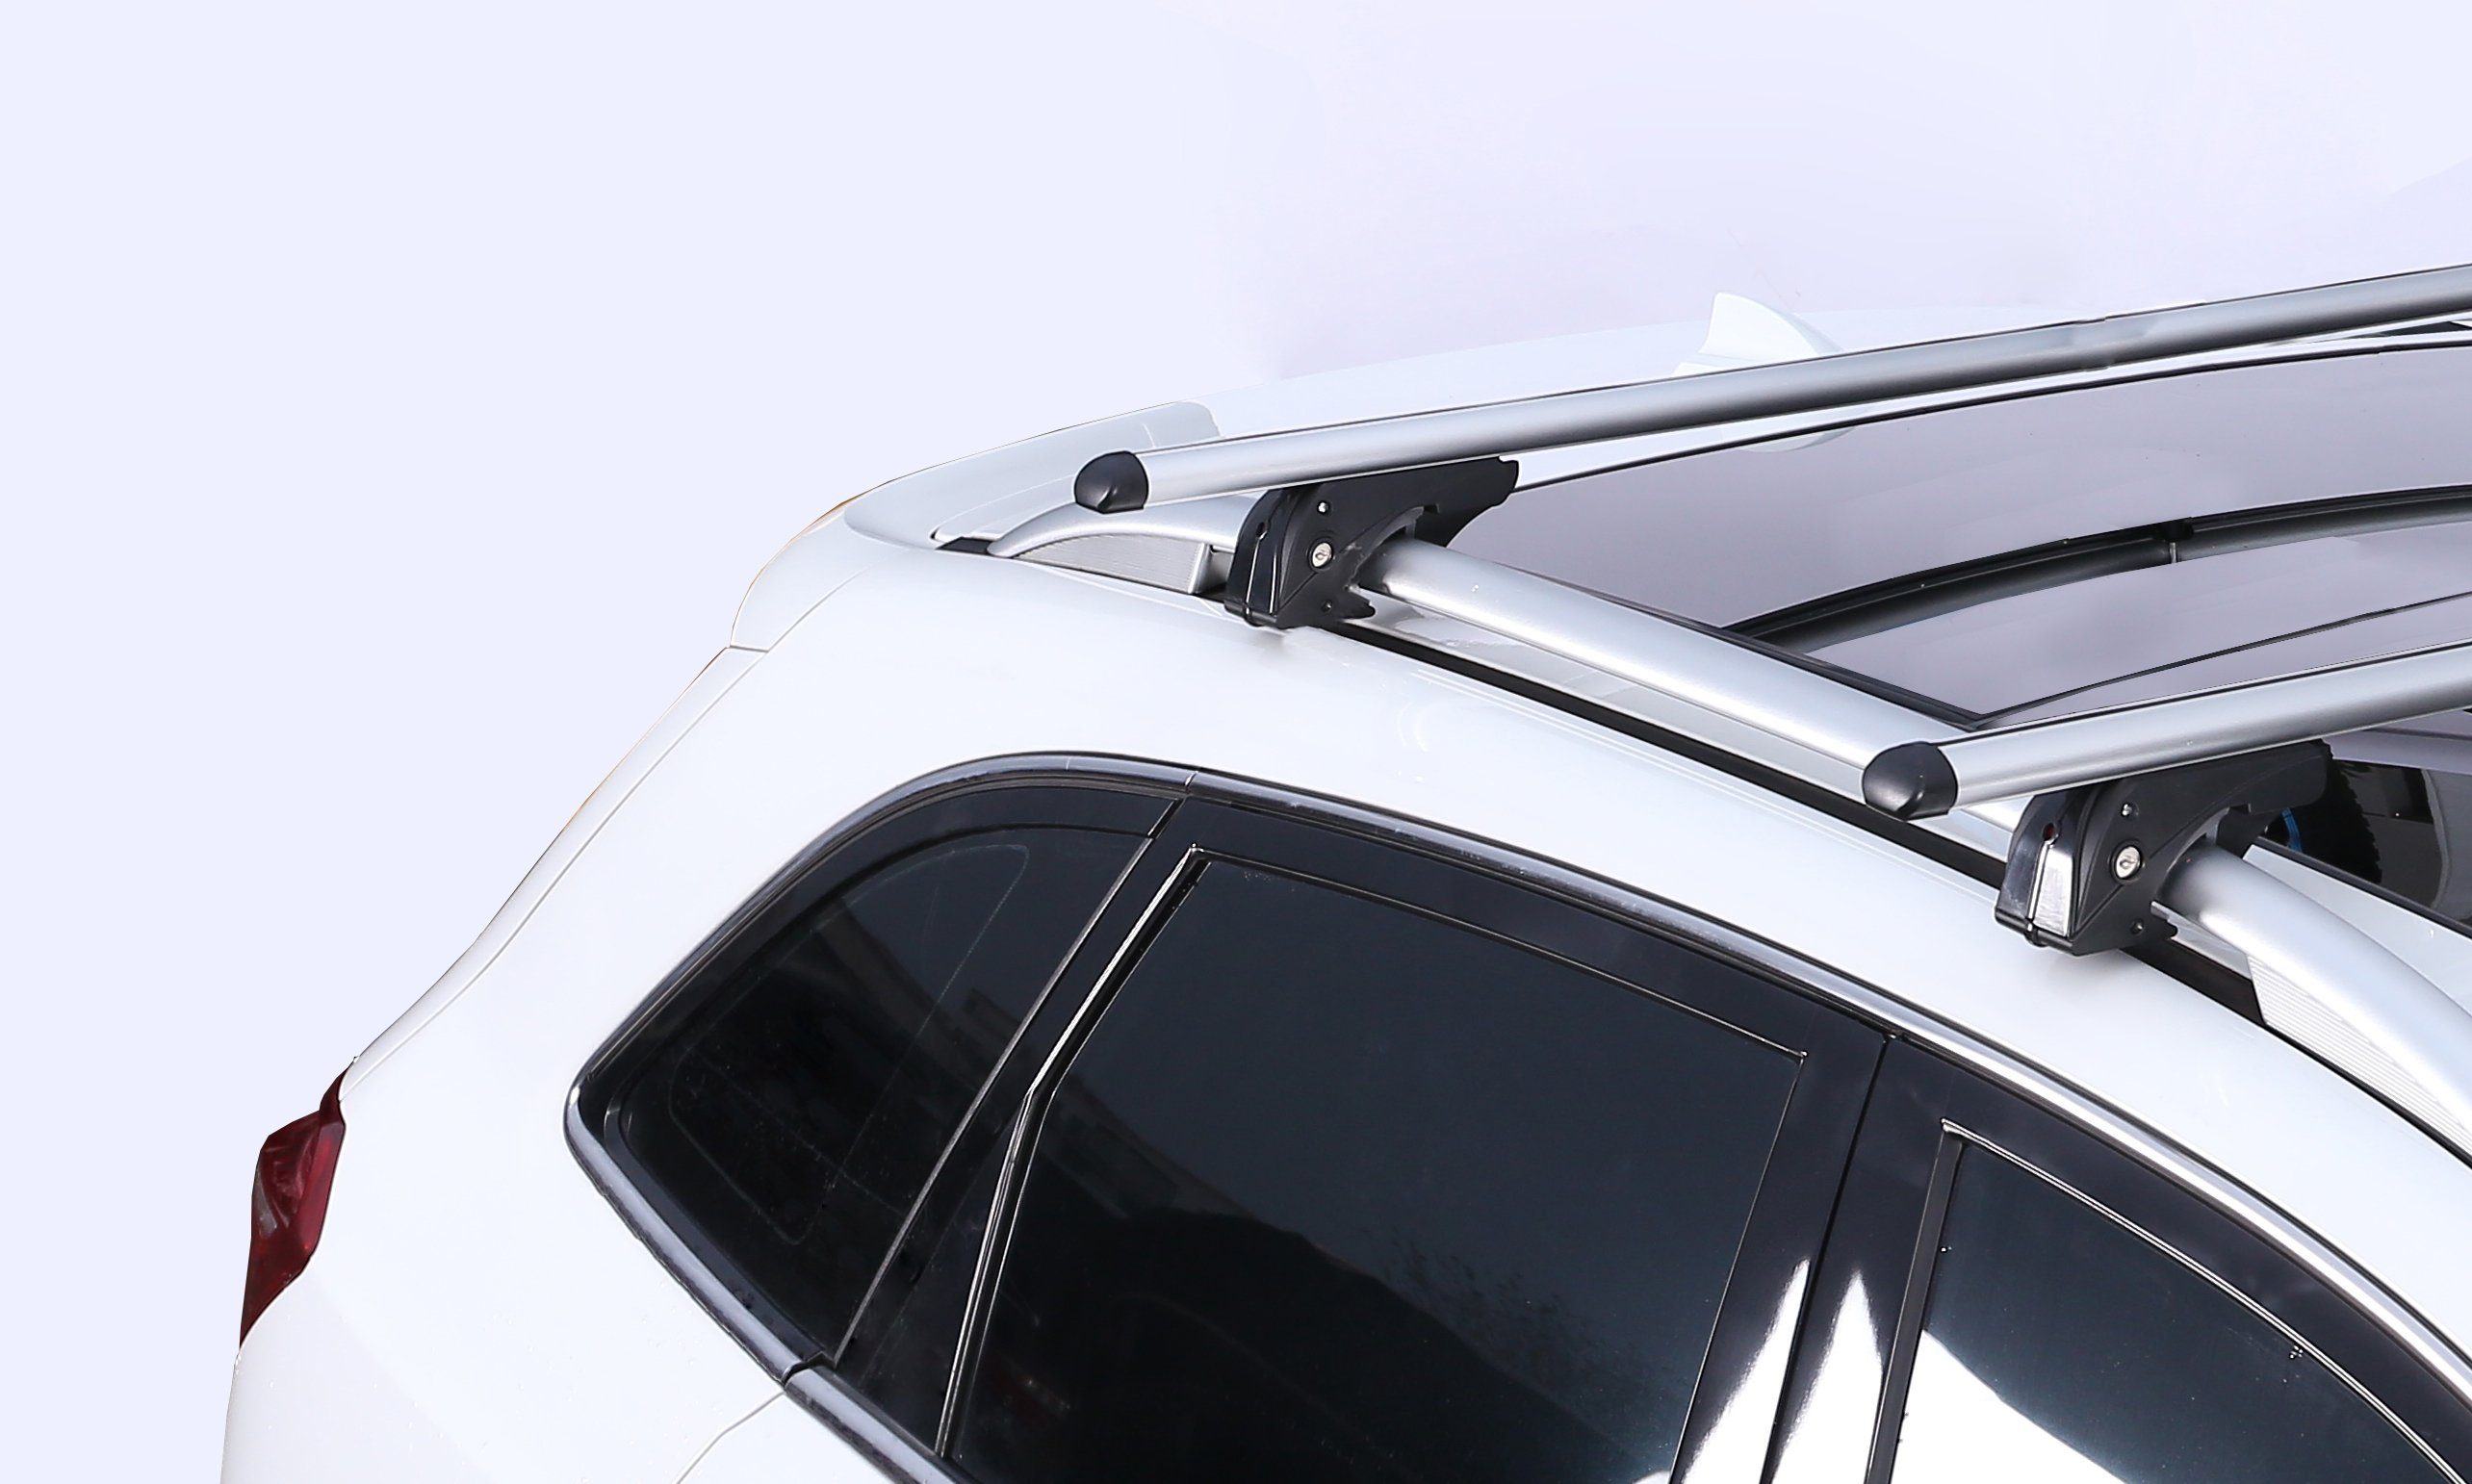 08-16, kompatibel (Für Ihren Türer) Dachbox, Volvo Dachträger/Relingträger + und XC70 VDPLION2 Volvo Dachträger Dachbox (5 Türer) (5 VDP CUBE470 Dachbox/Gepäckbox Set), mit im XC70 08-16